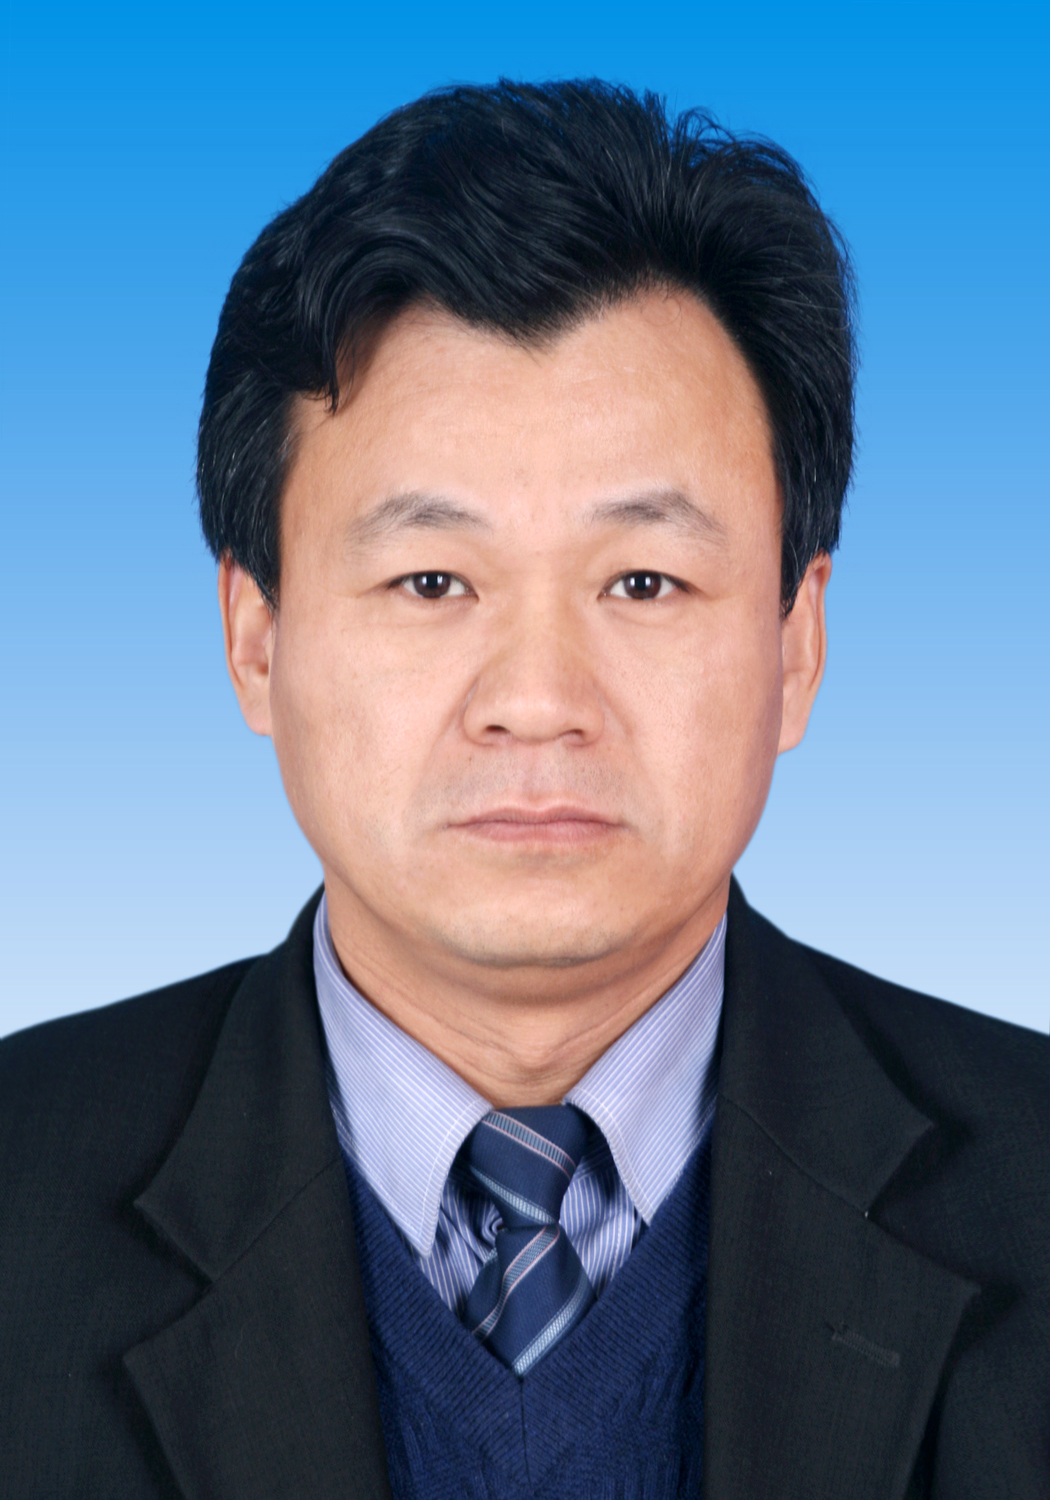 席磊(西藏農牧科學院副院長)